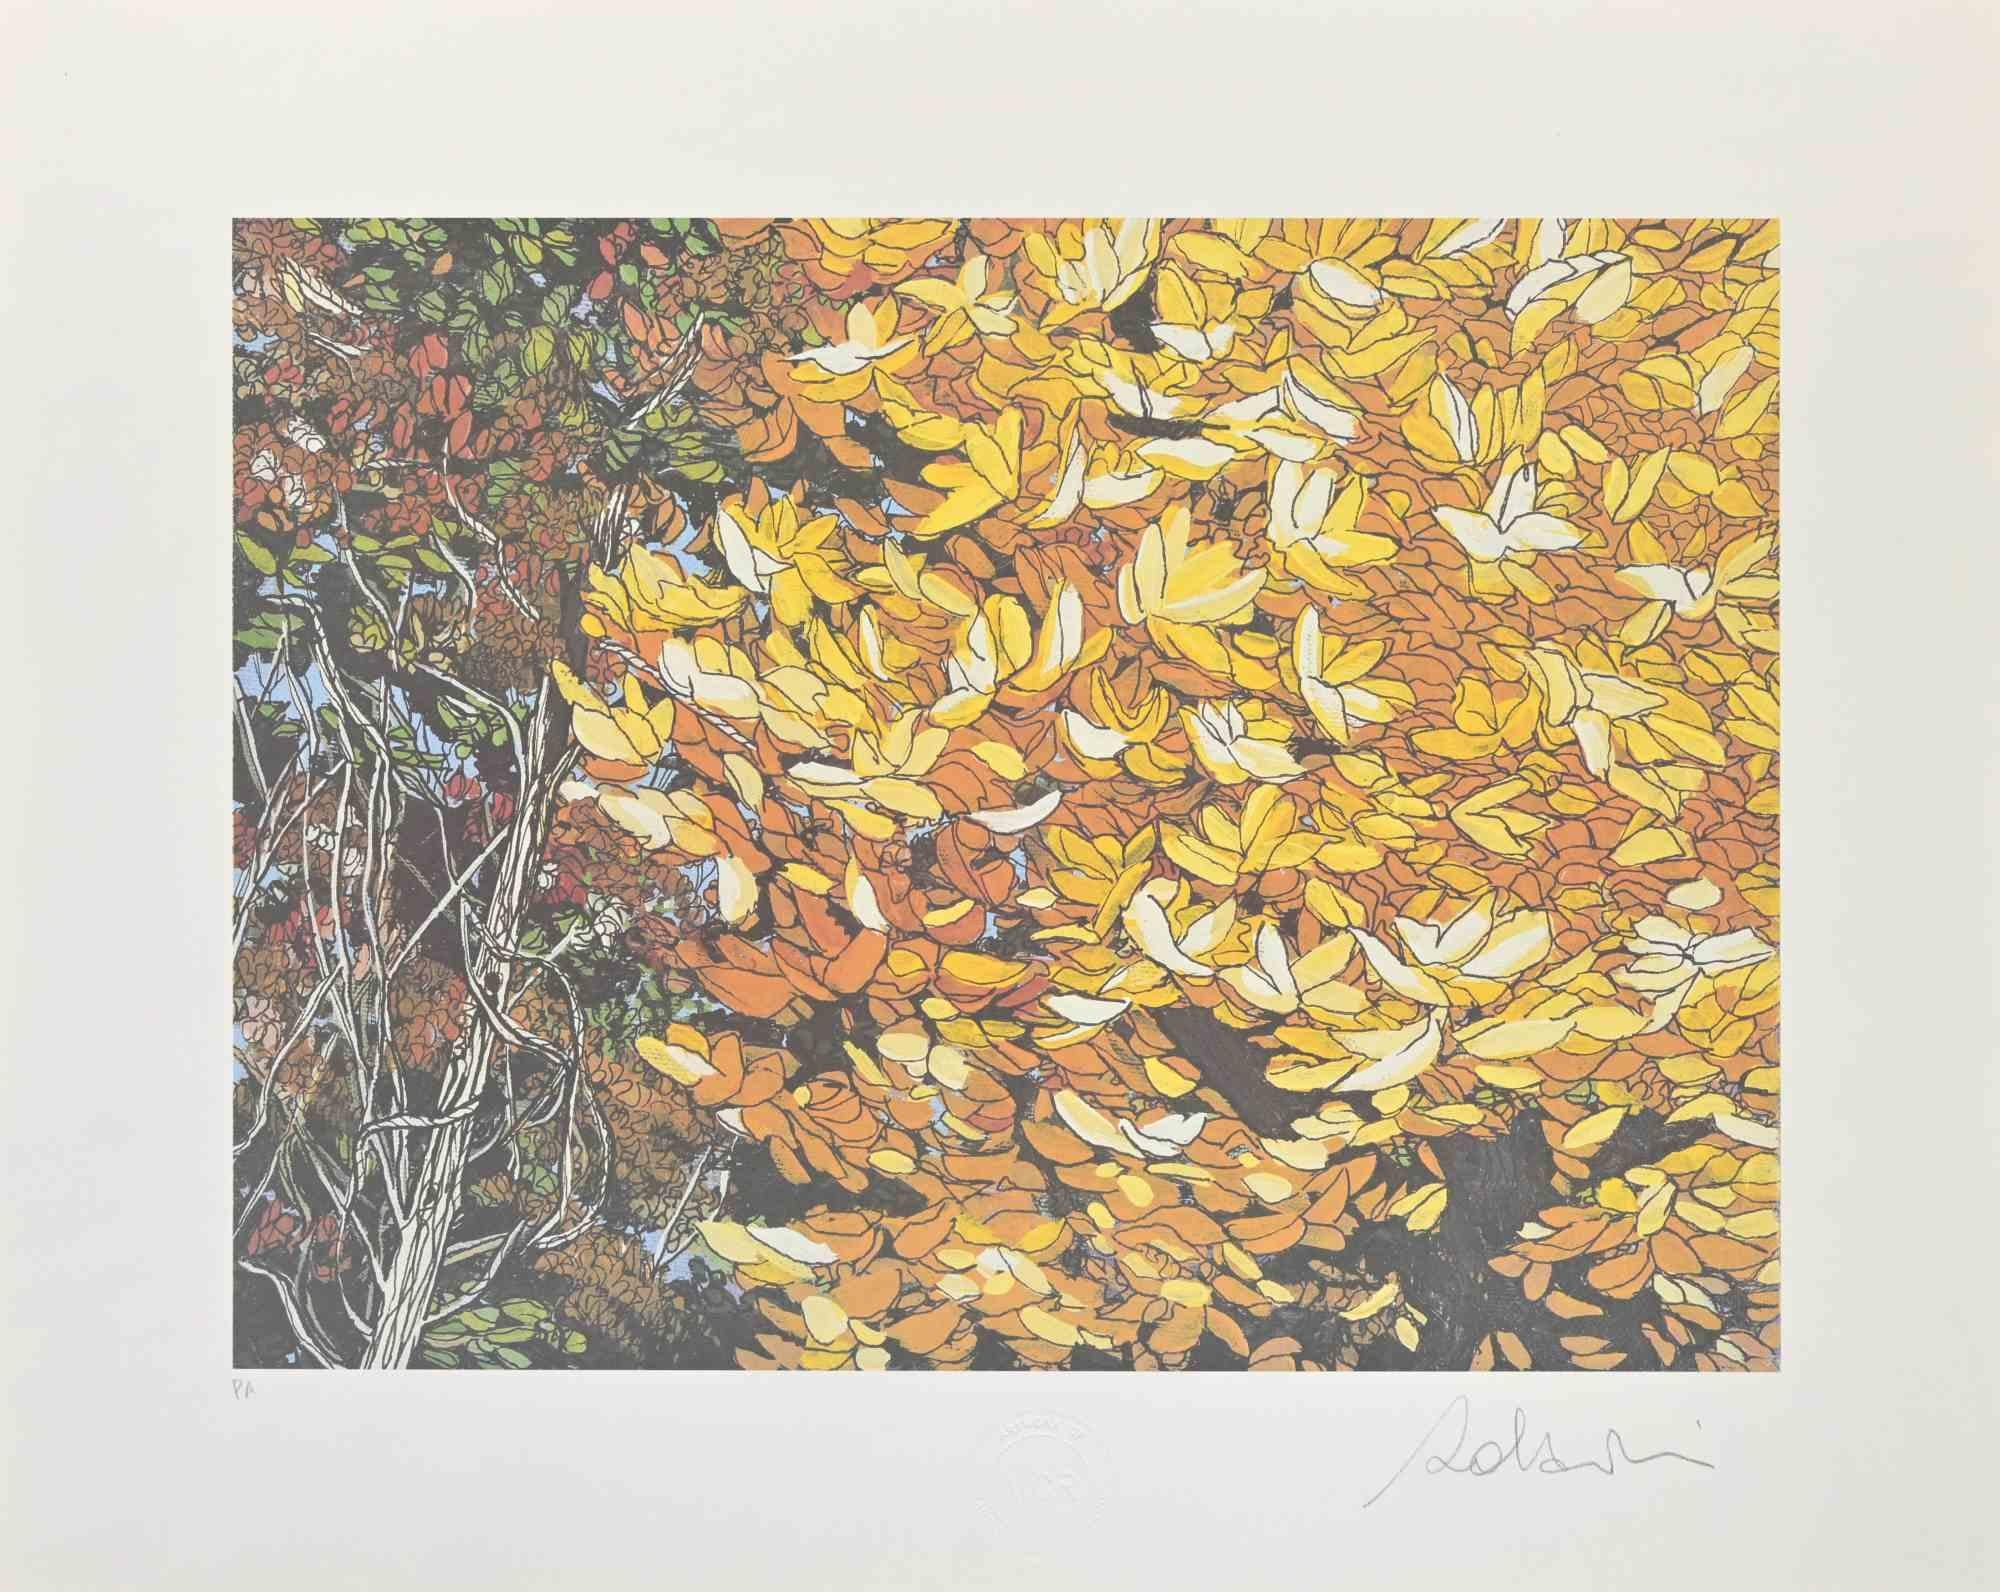 Rolandi (Maurizio Coccia) Figurative Print - Landscapes Of Autumn - Screen Print by Rolandi - 1980s